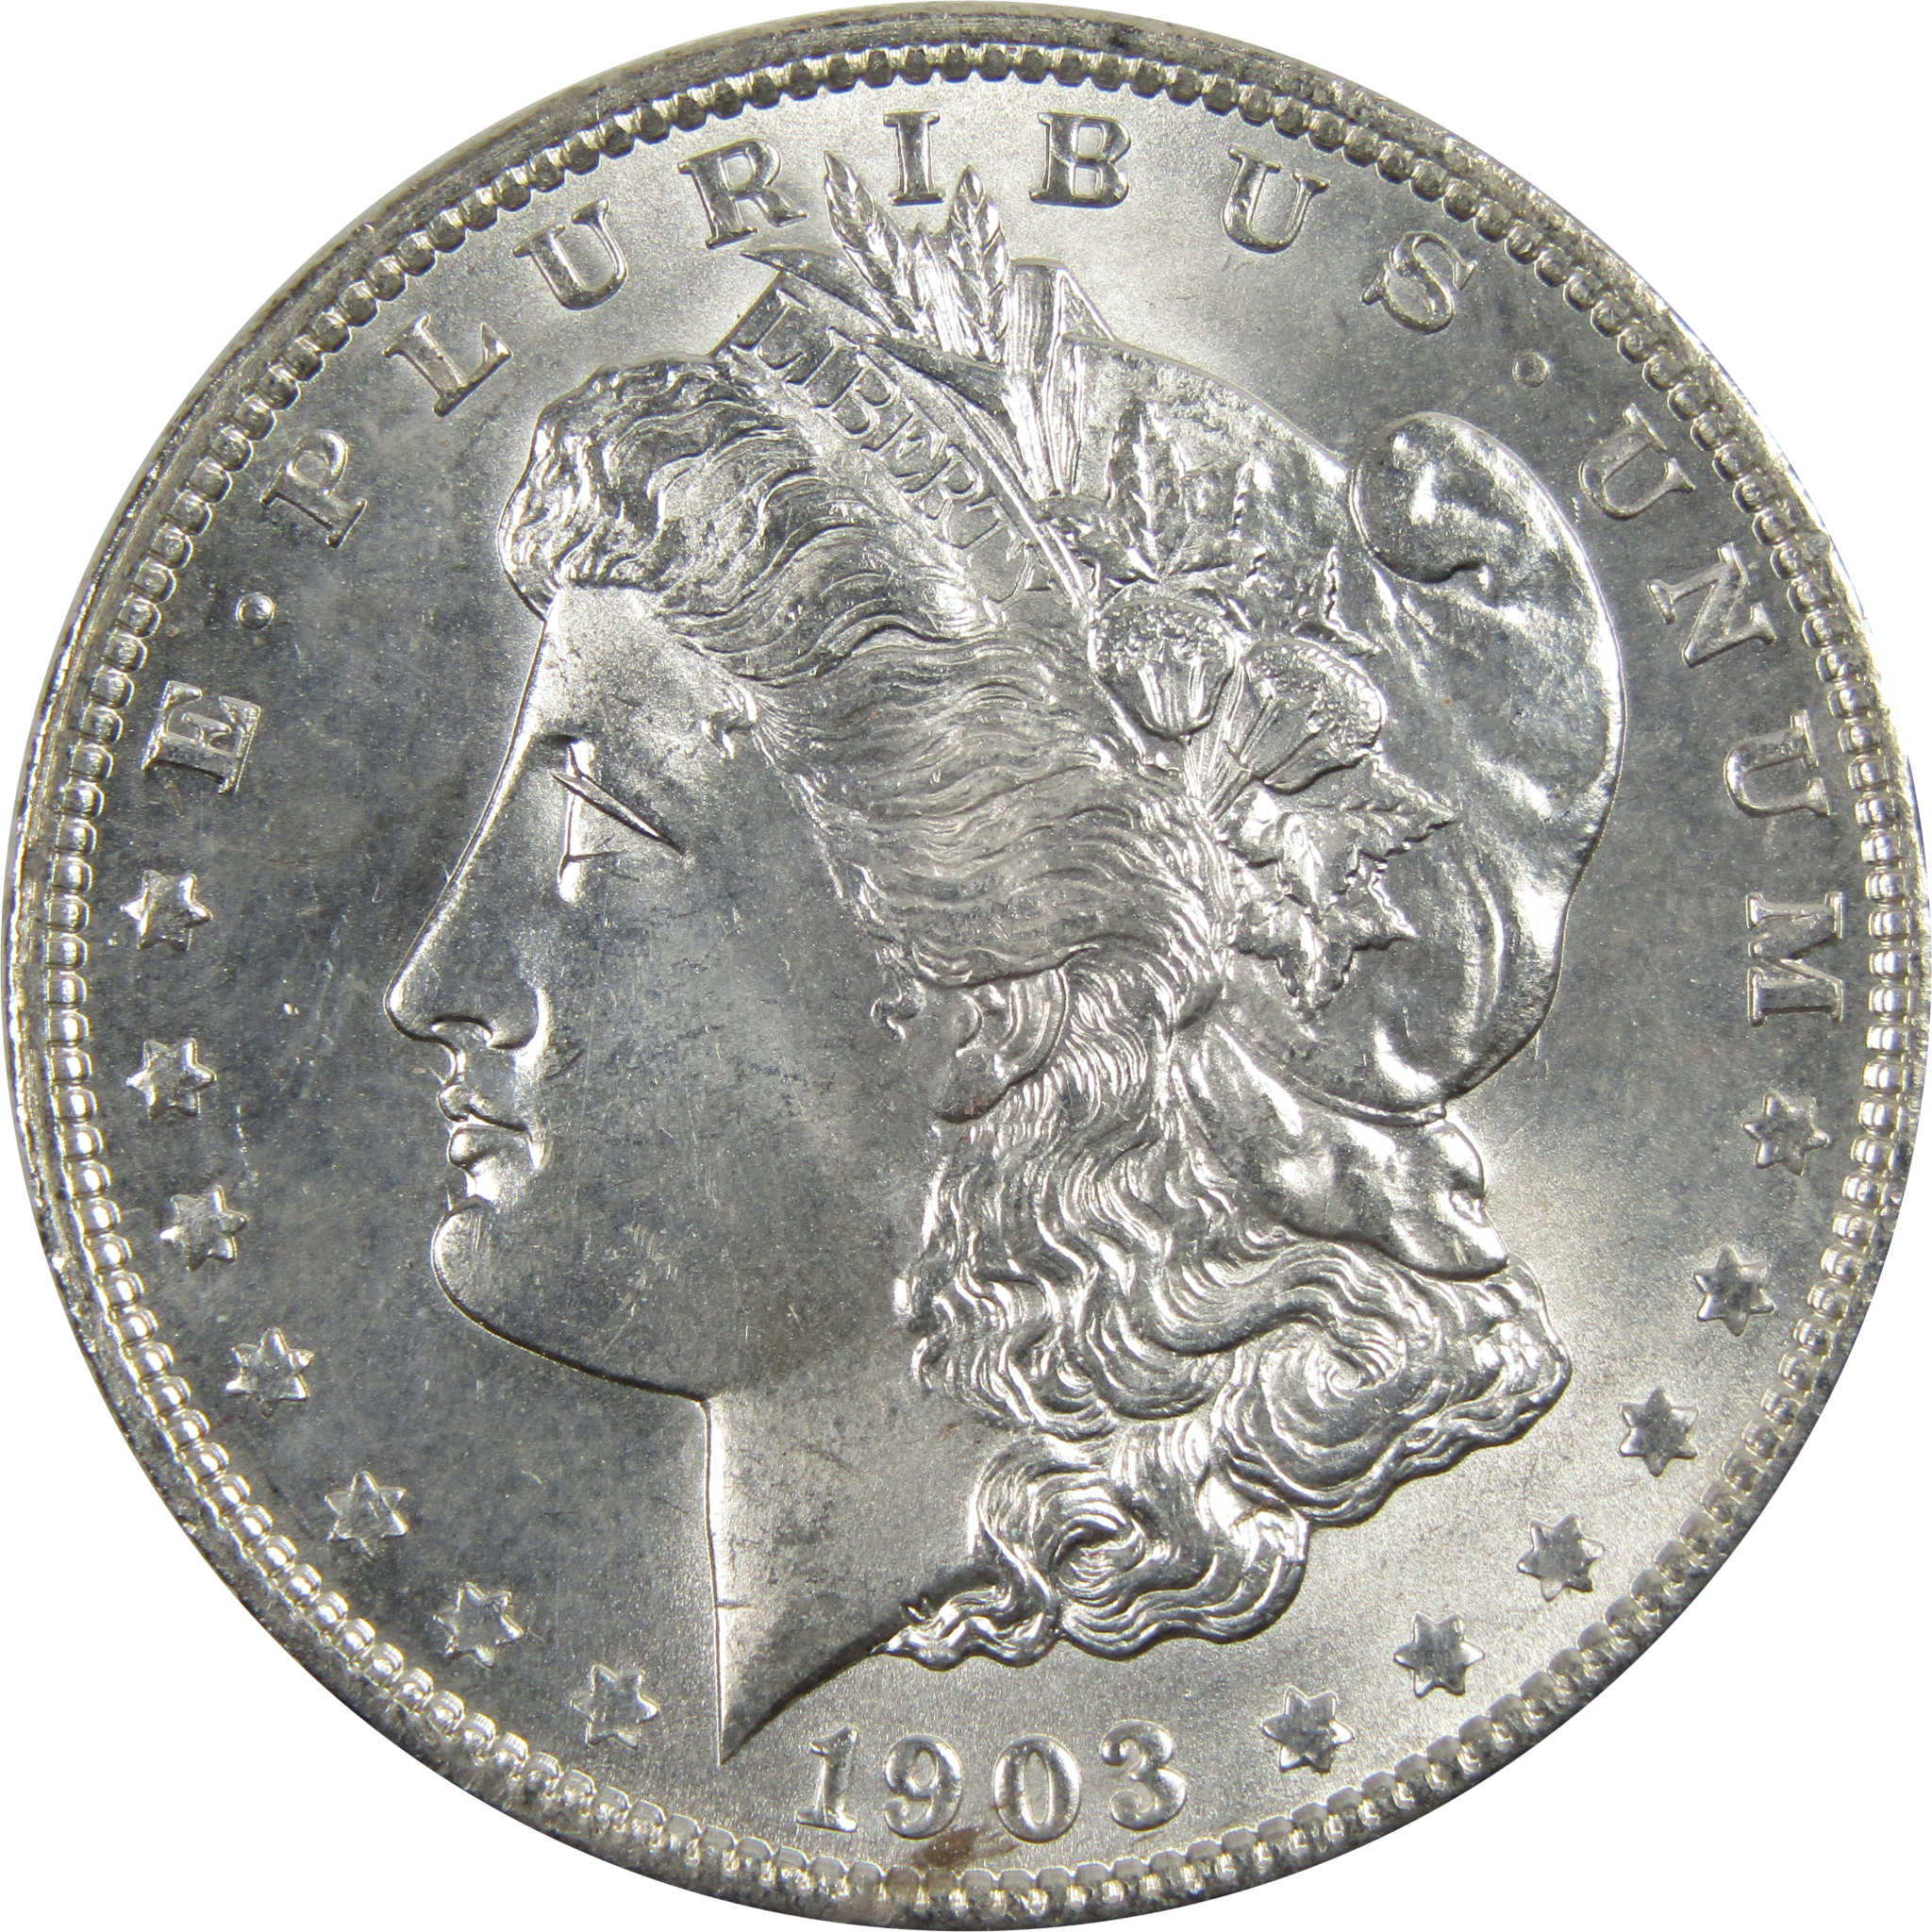 1903 O Morgan Dollar BU Choice Uncirculated 90% Silver $1 SKU:I7912 - Morgan coin - Morgan silver dollar - Morgan silver dollar for sale - Profile Coins &amp; Collectibles